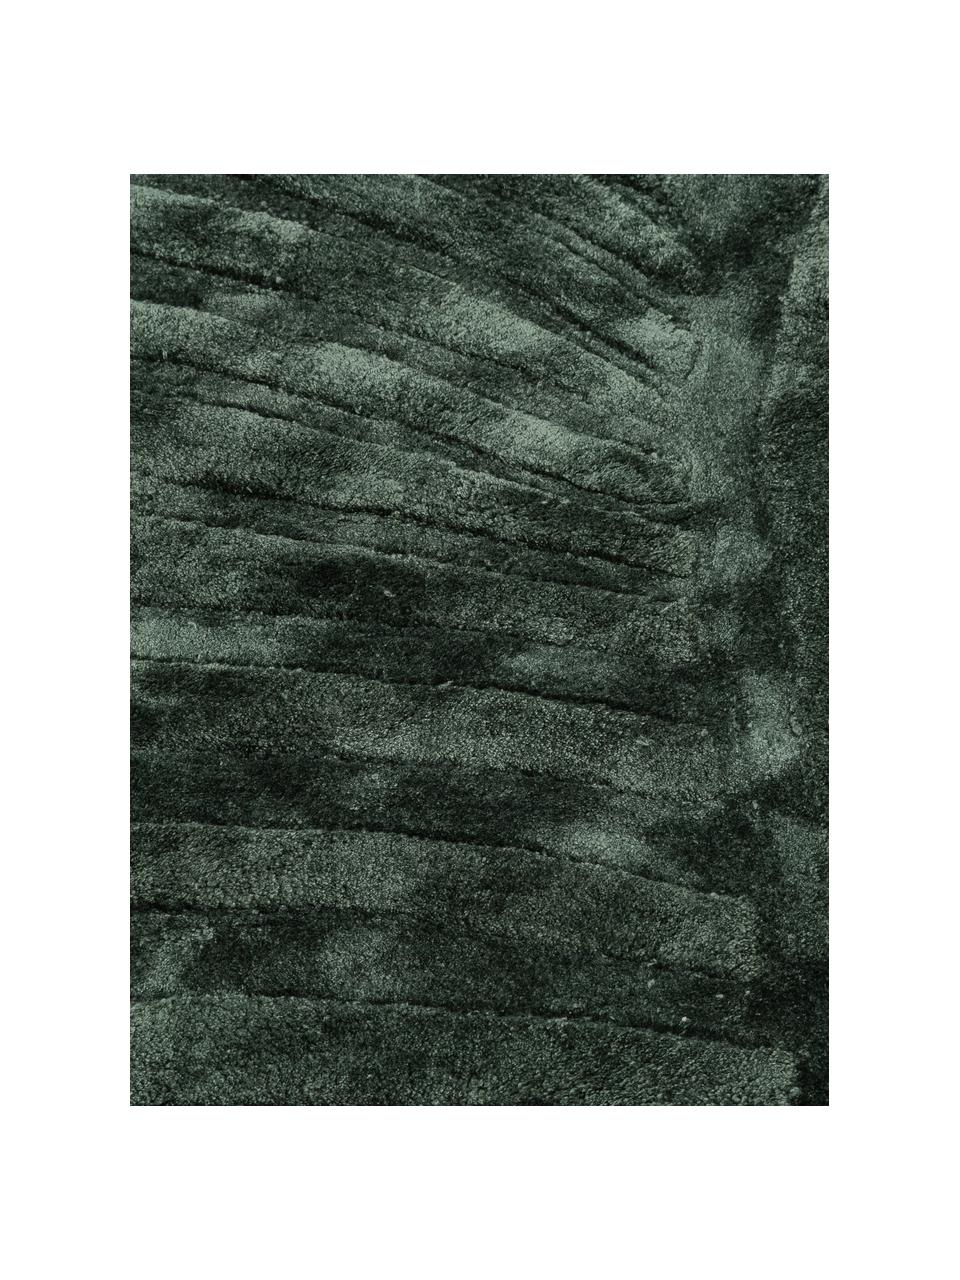 Ručně všívaný viskózový koberec se vzorem Bloom, Tmavě zelená